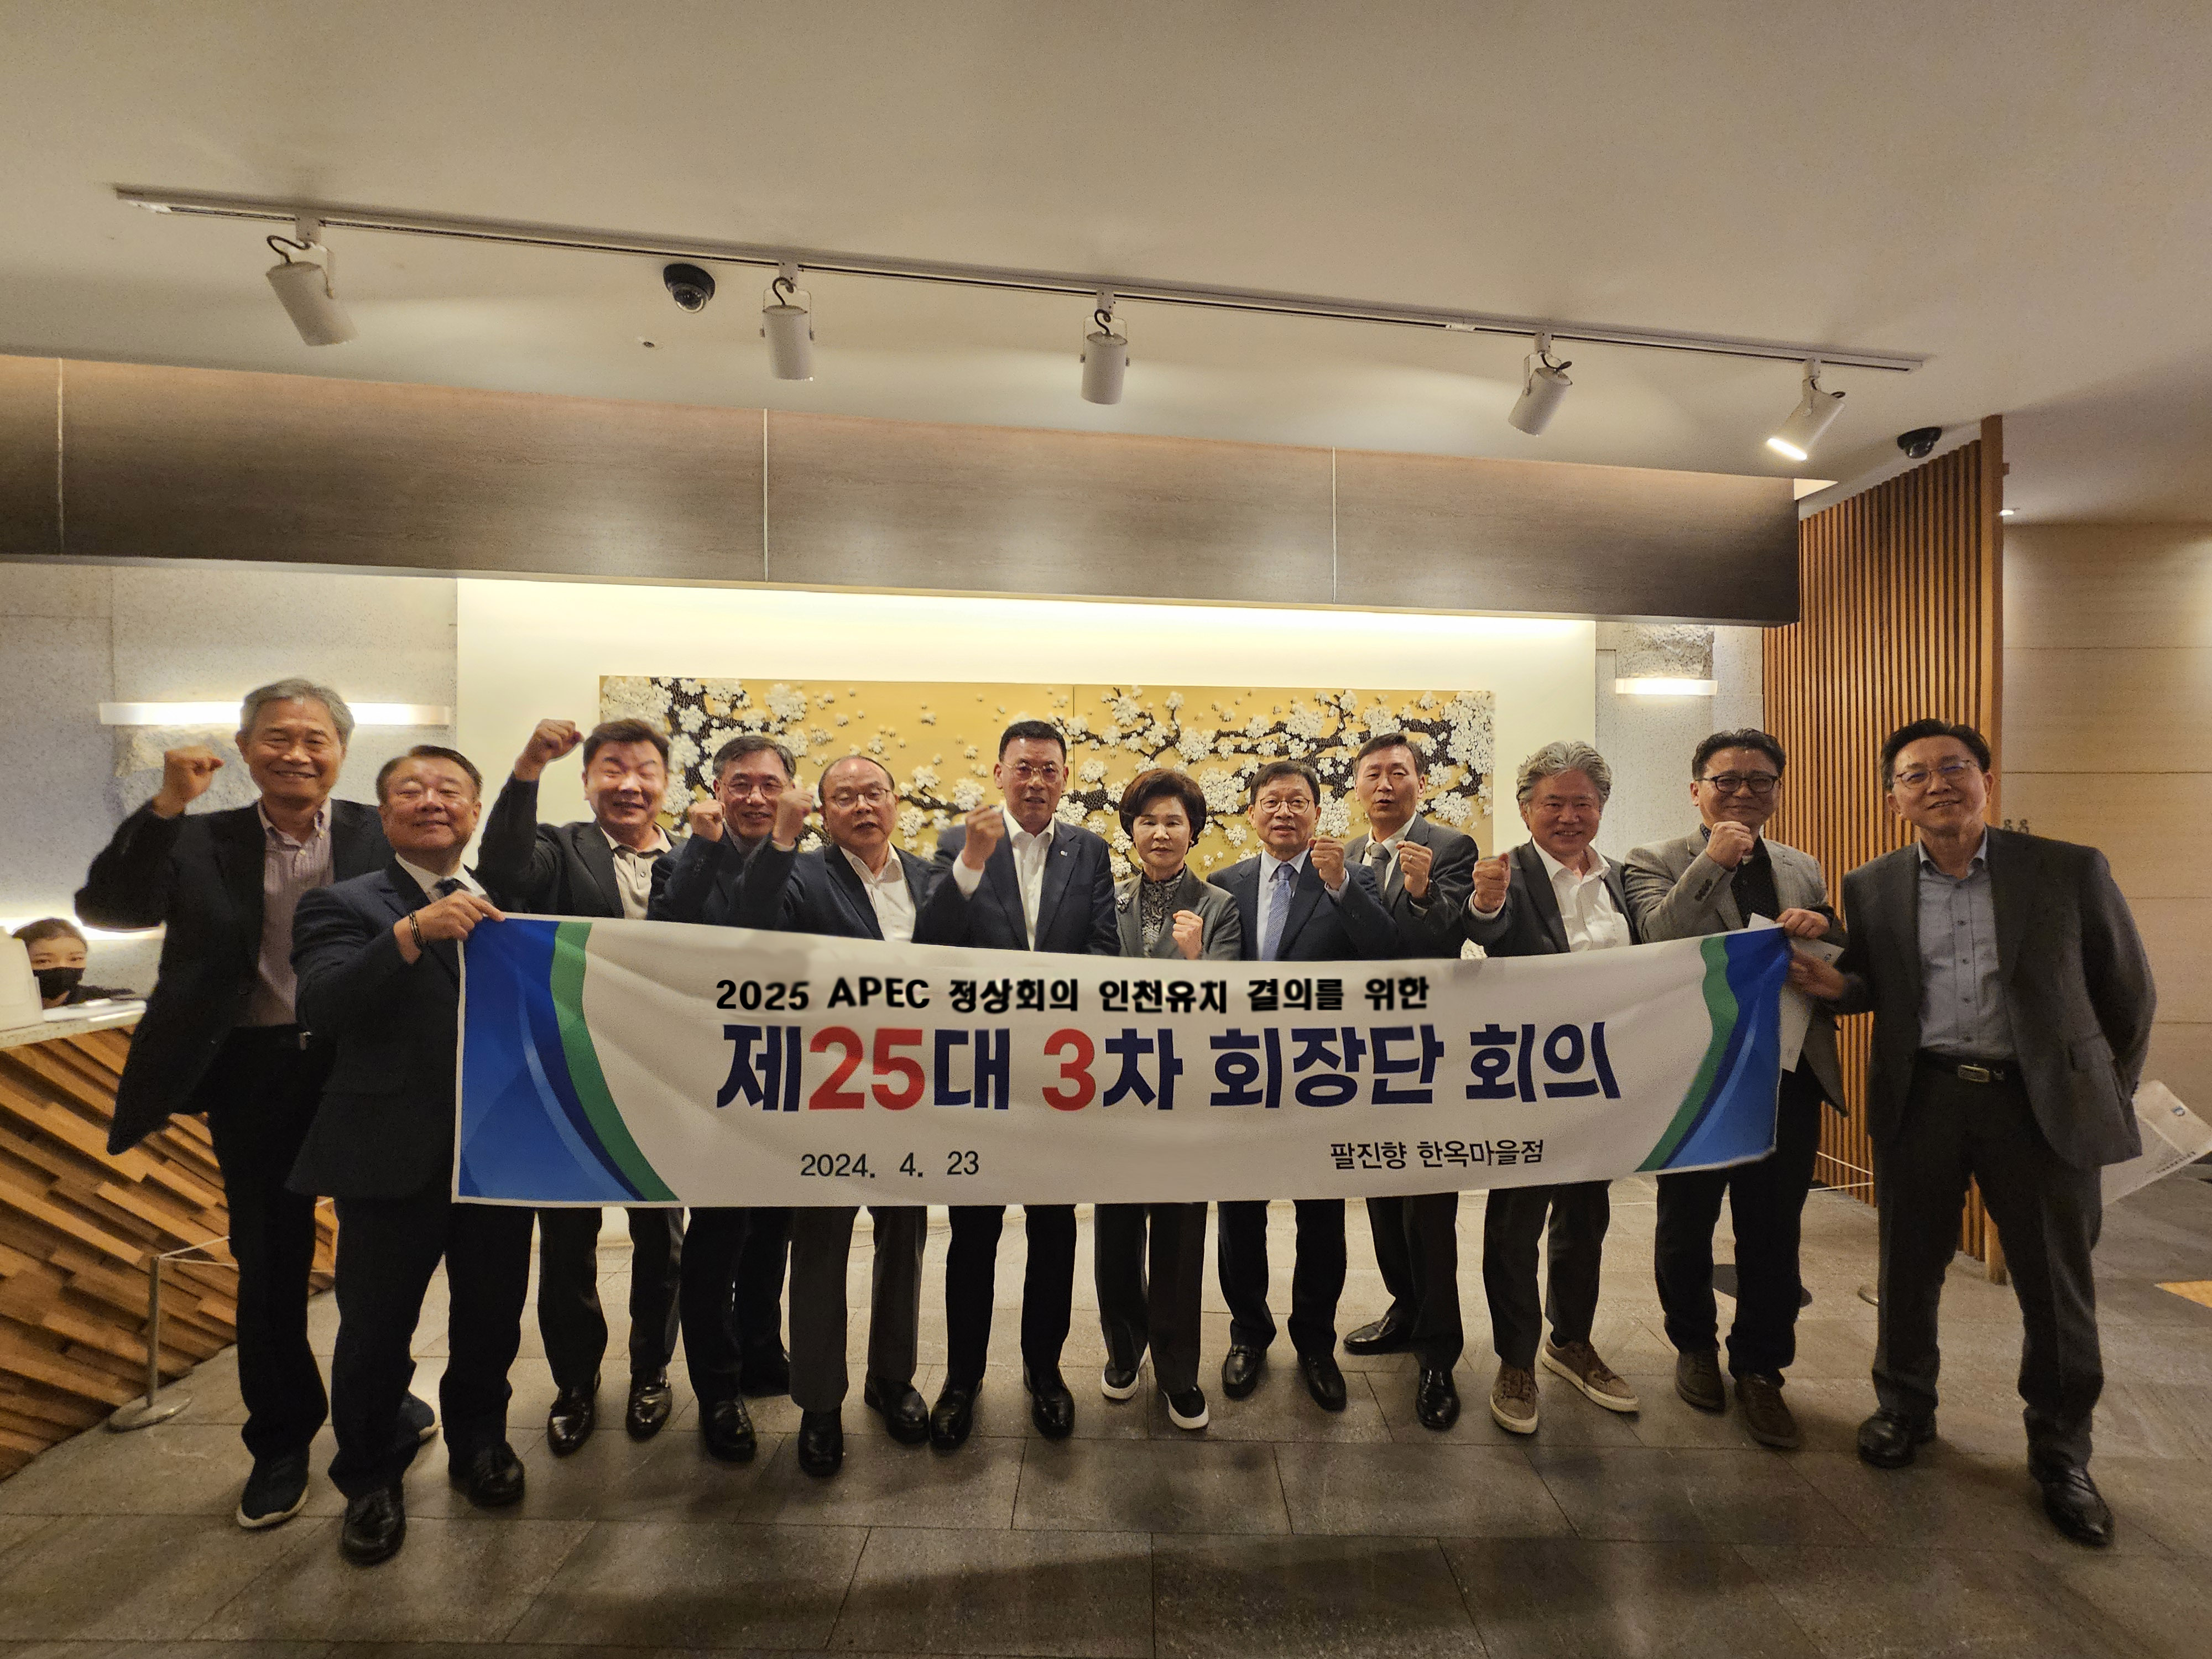 인천상의 회장단, APEC 인천 유치를 위한 한마음 결의